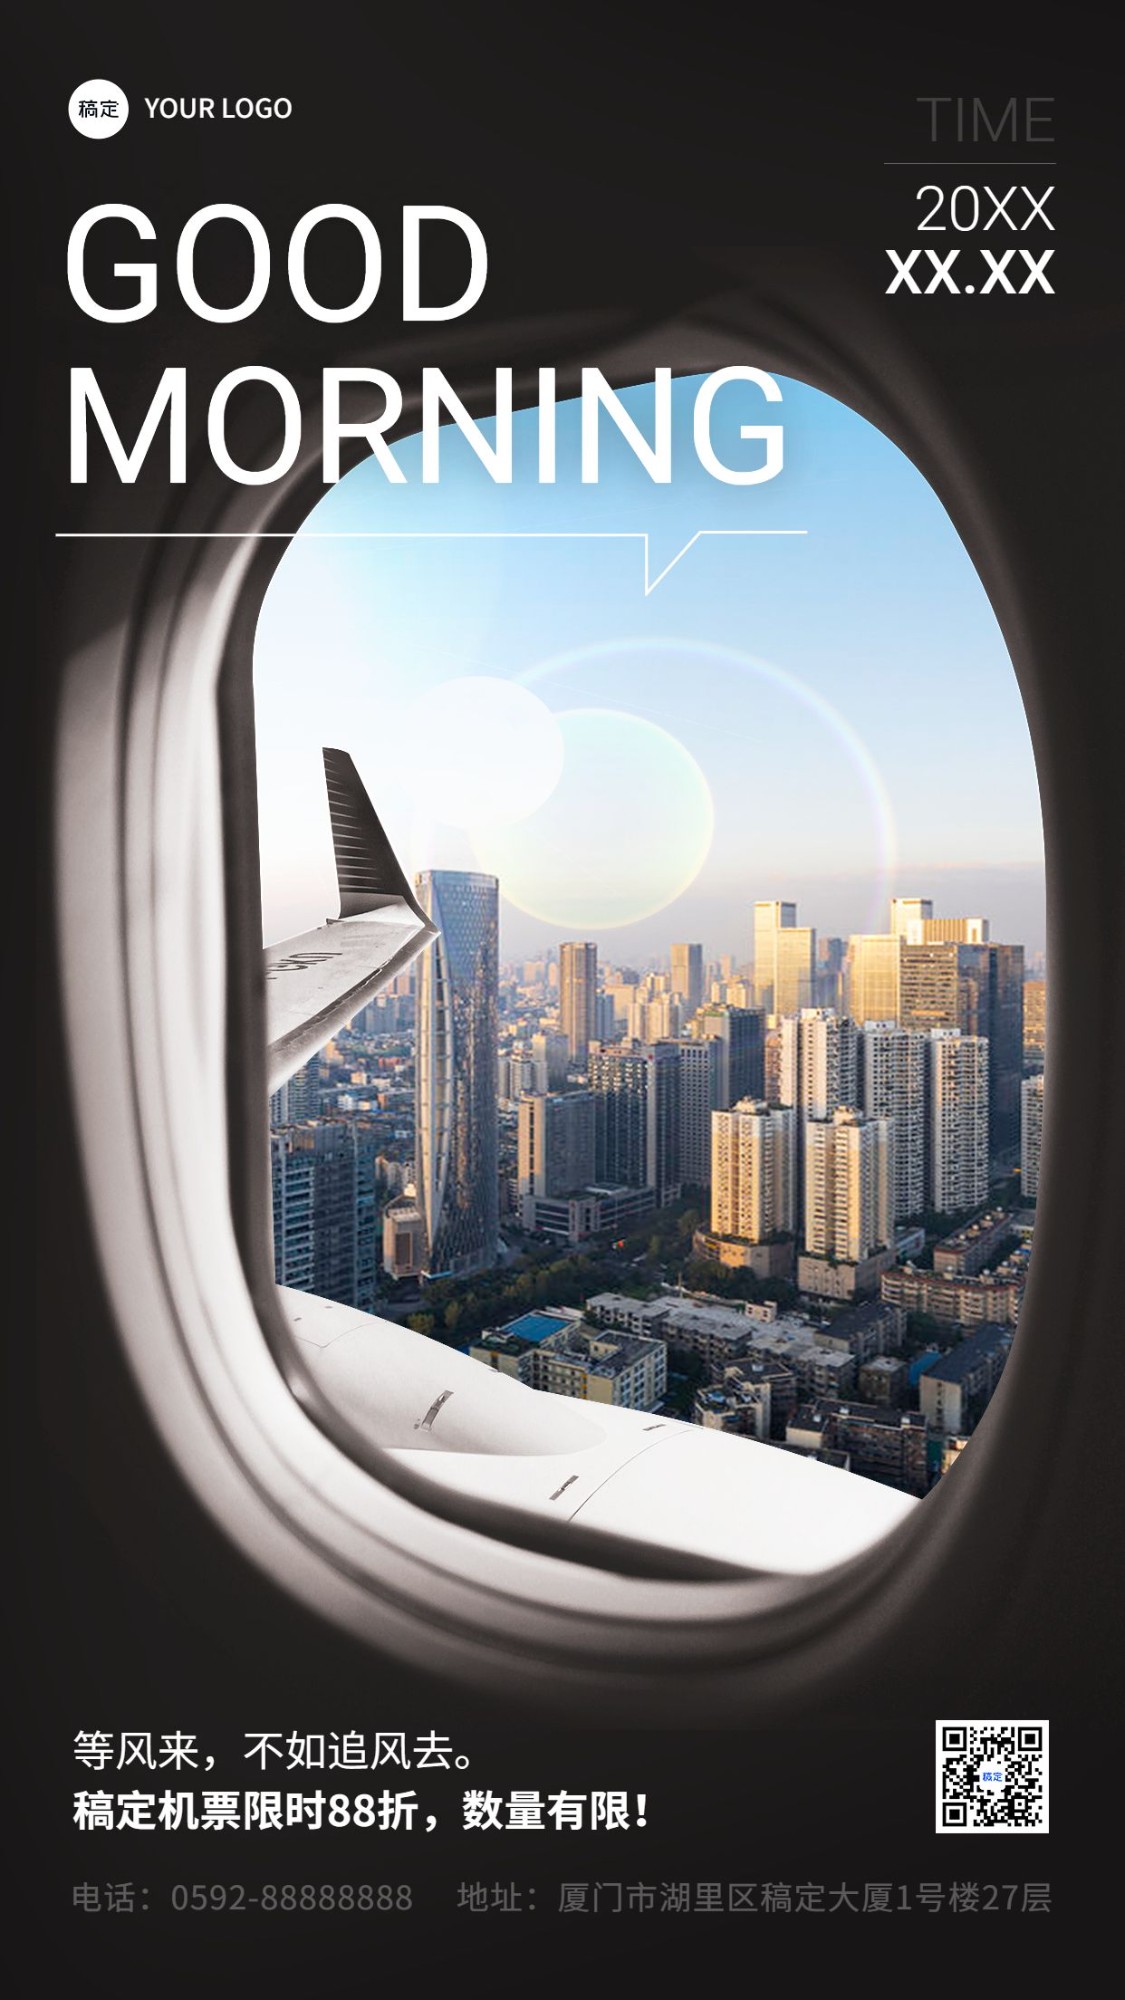 旅游出行早安问候营销日签飞机舷窗元素设计手机海报预览效果